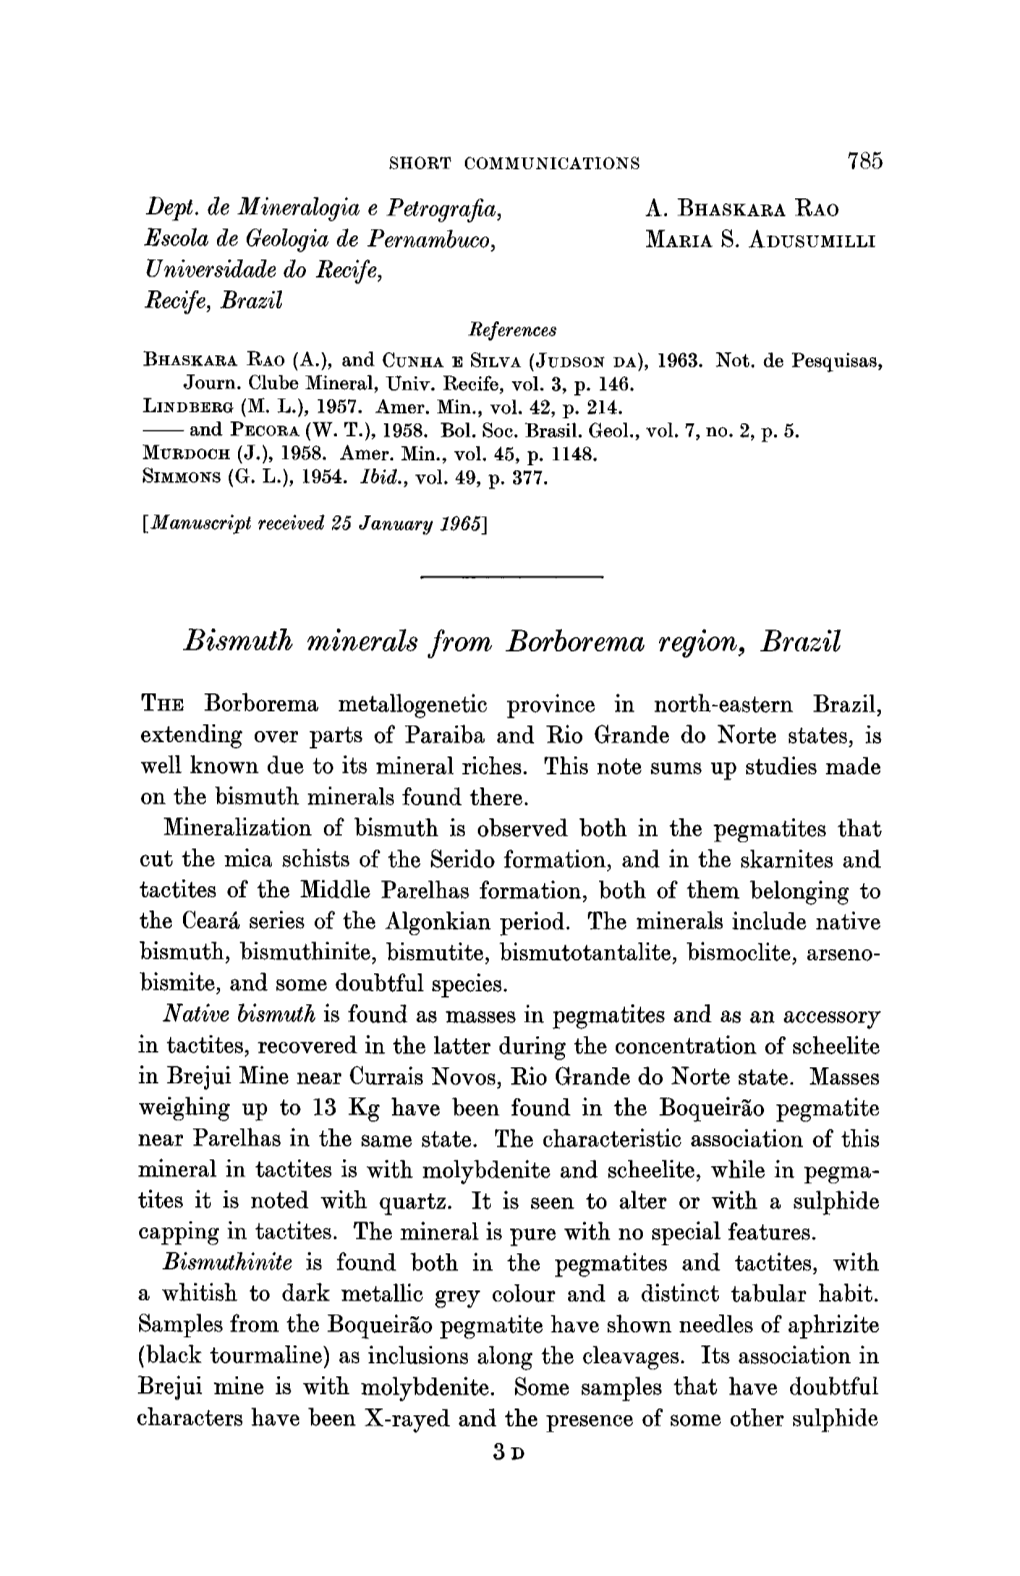 Bismuth Minerals from Borborema Region, Brazil